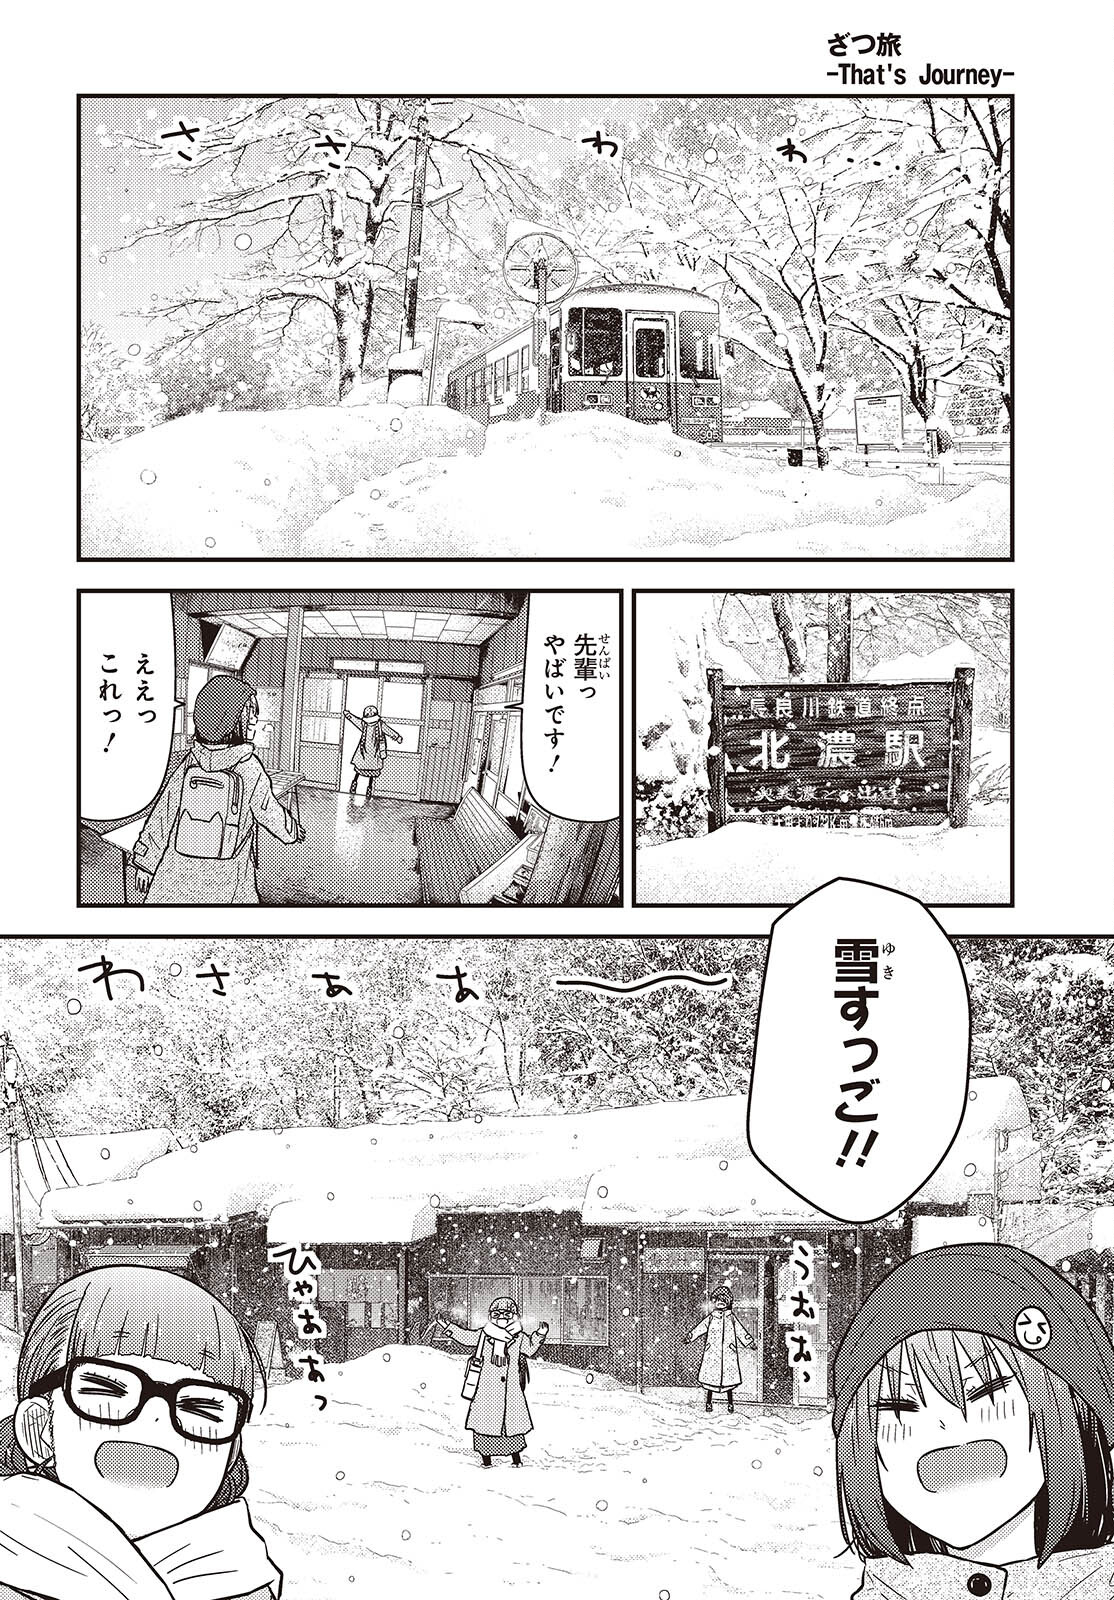 ざつ旅-That’s Journey- 第36話 - Page 4